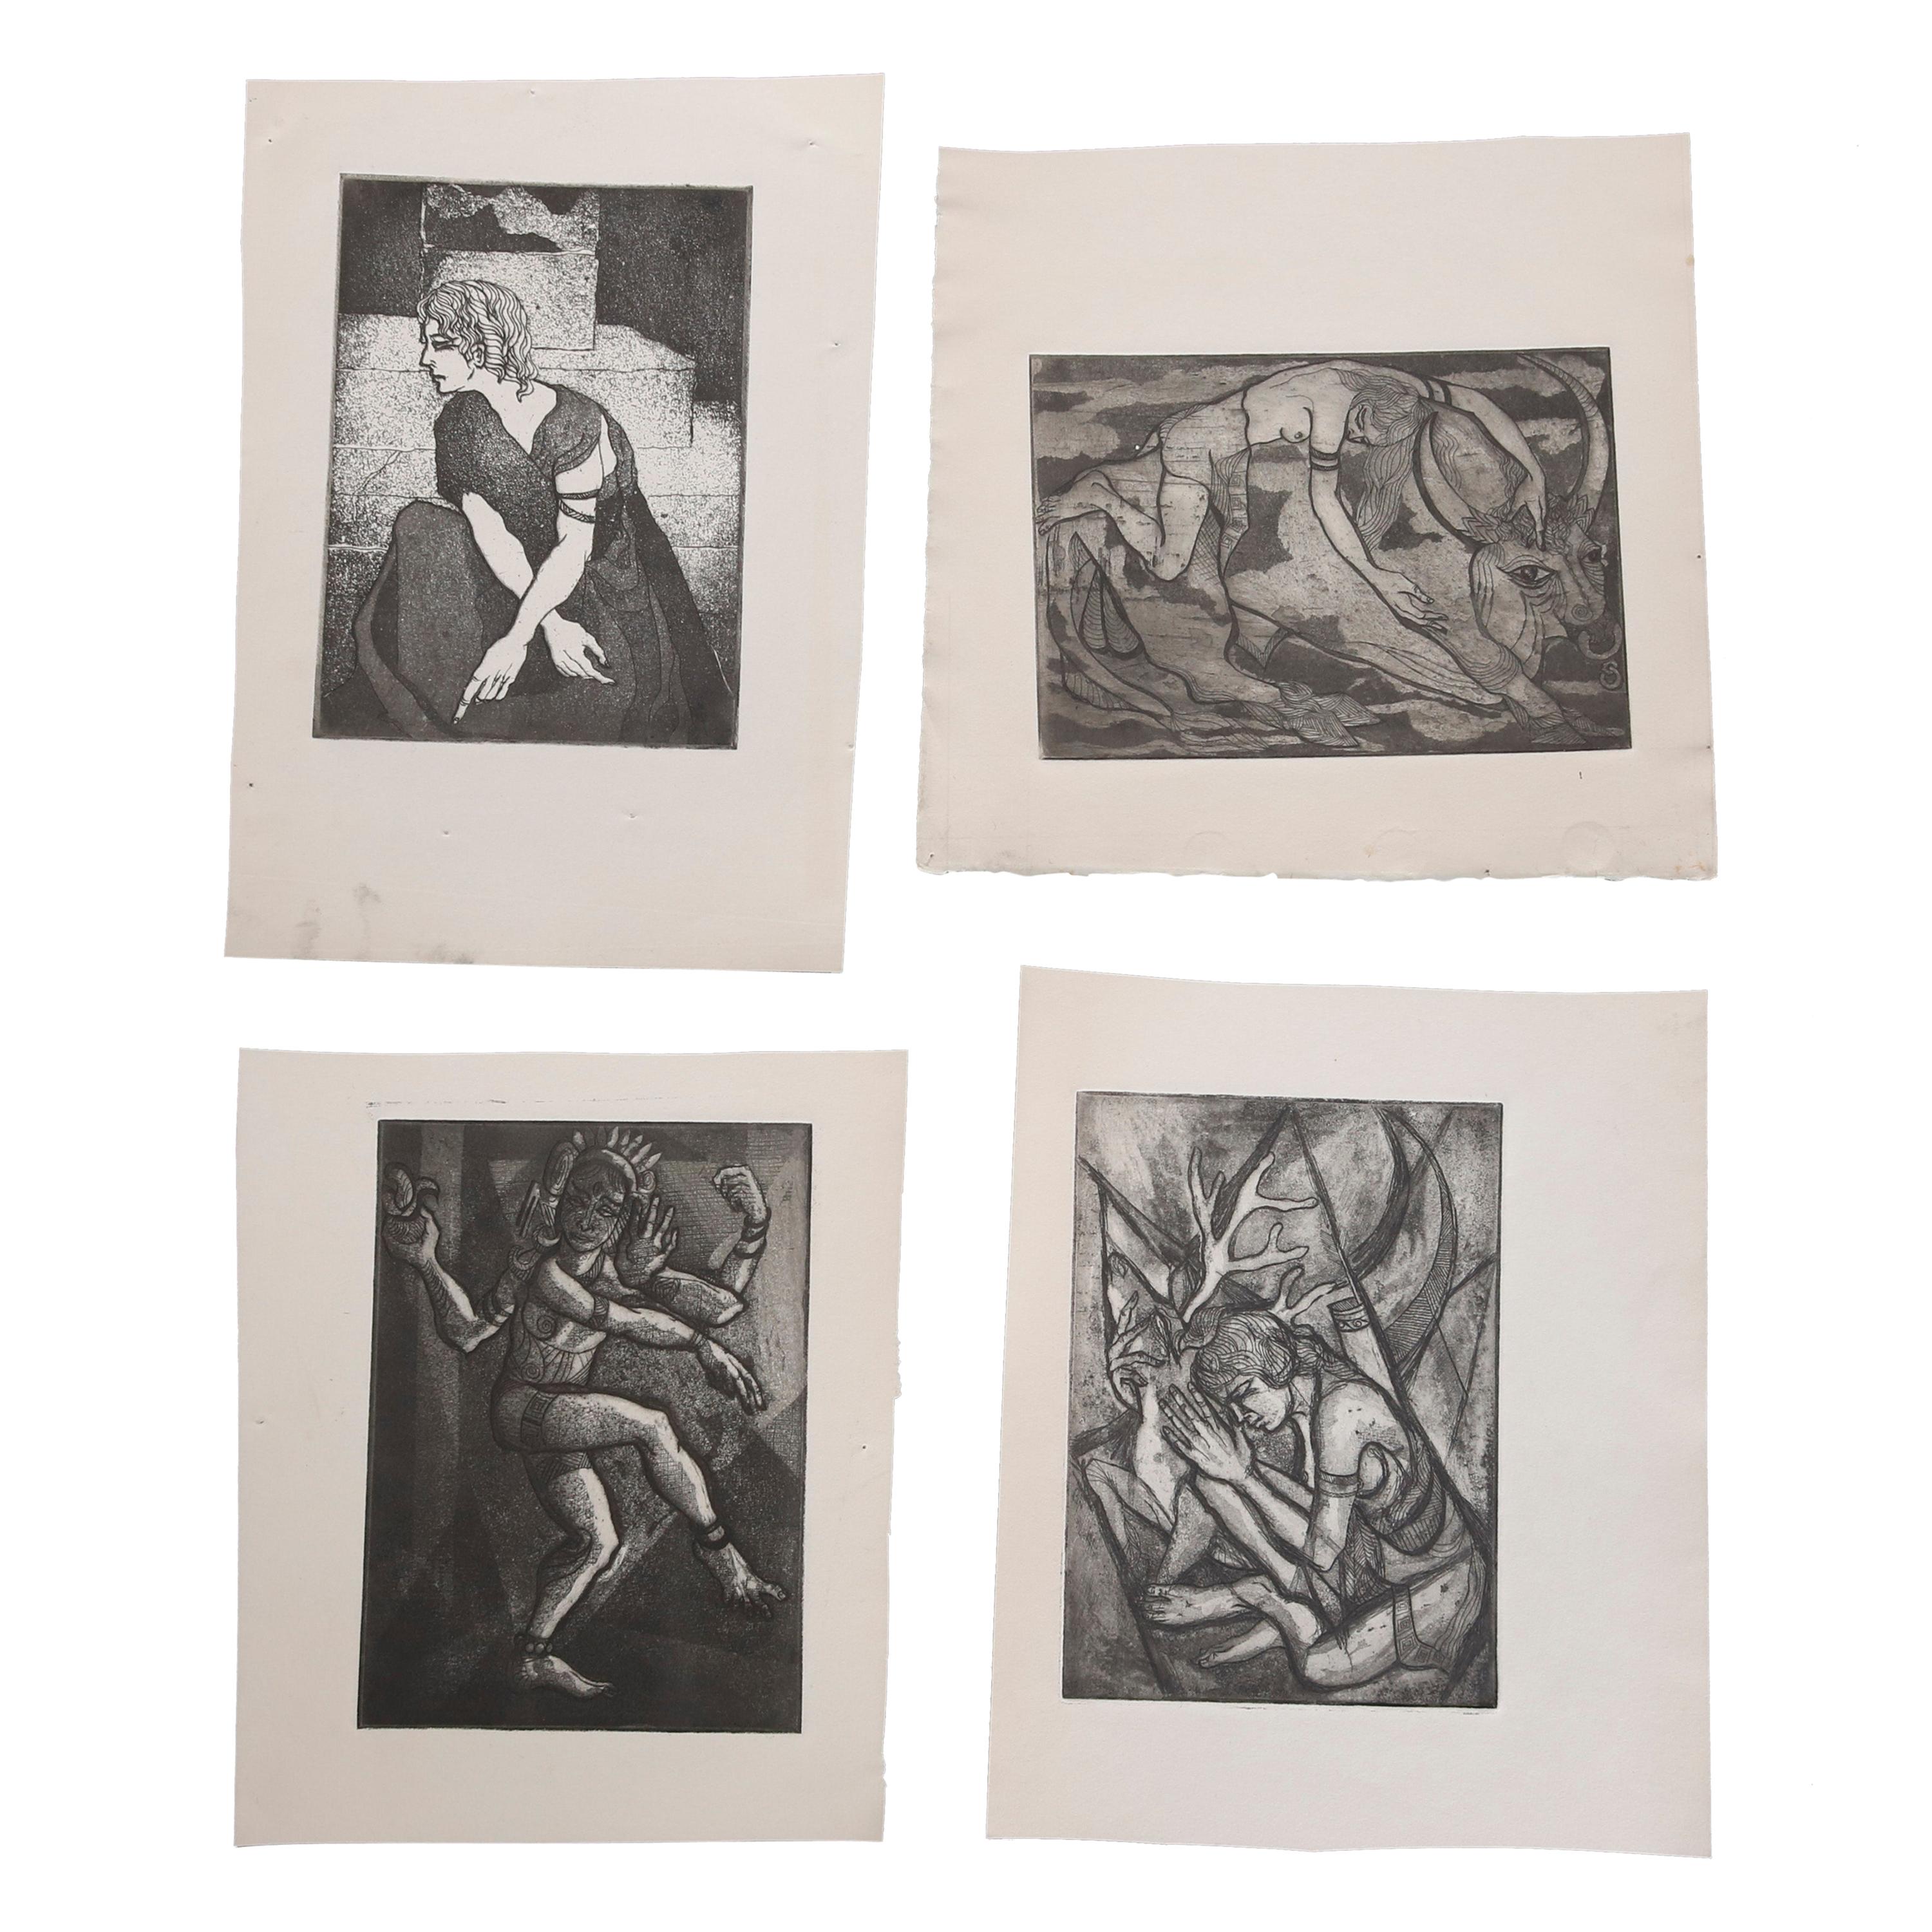 Collection de lithographies expressionnistes de James Joseph Kearns avec personnages